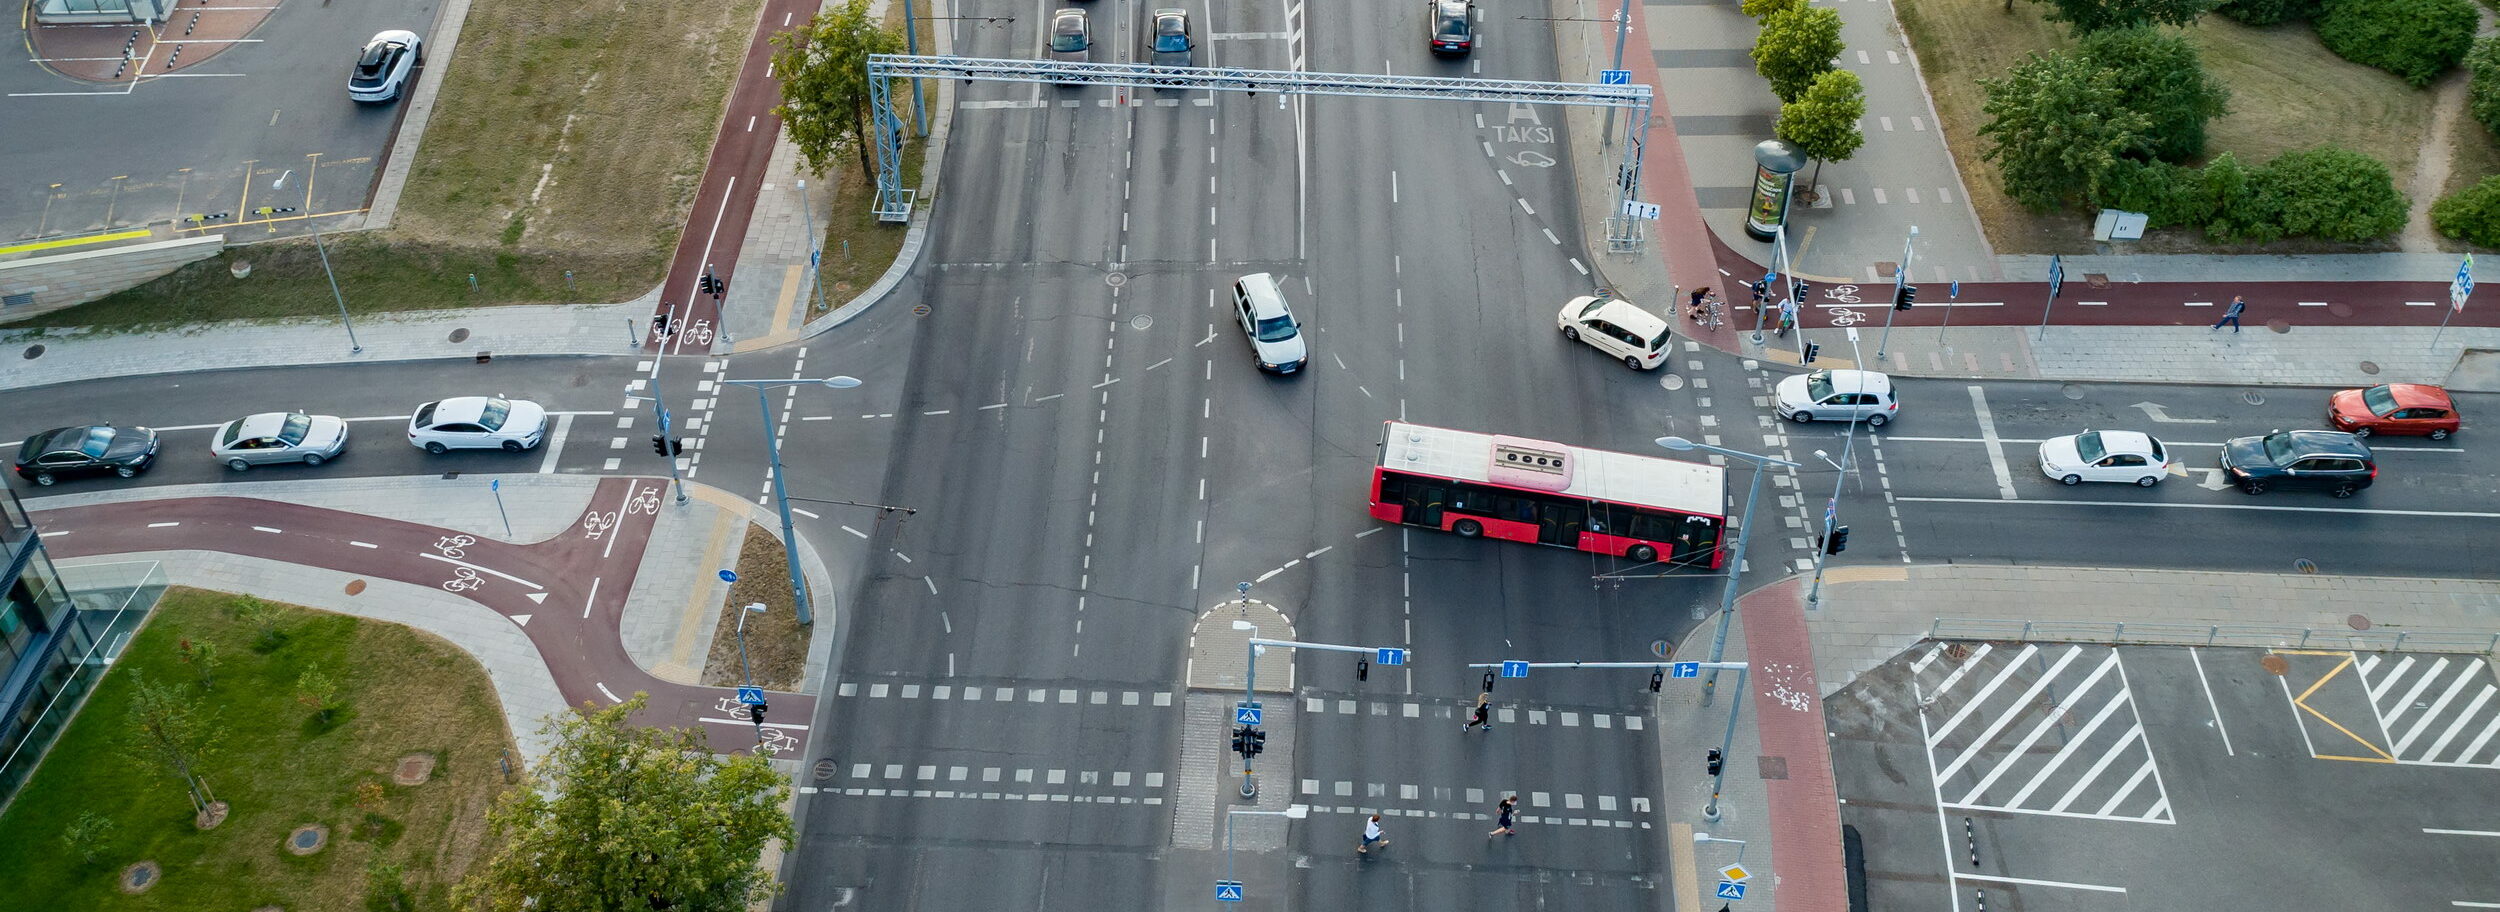 <strong>Nuo gruodžio 5 dienos planuojamas Vilniaus viešojo transporto vairuotojų streikas: ką reikia žinoti?</strong>